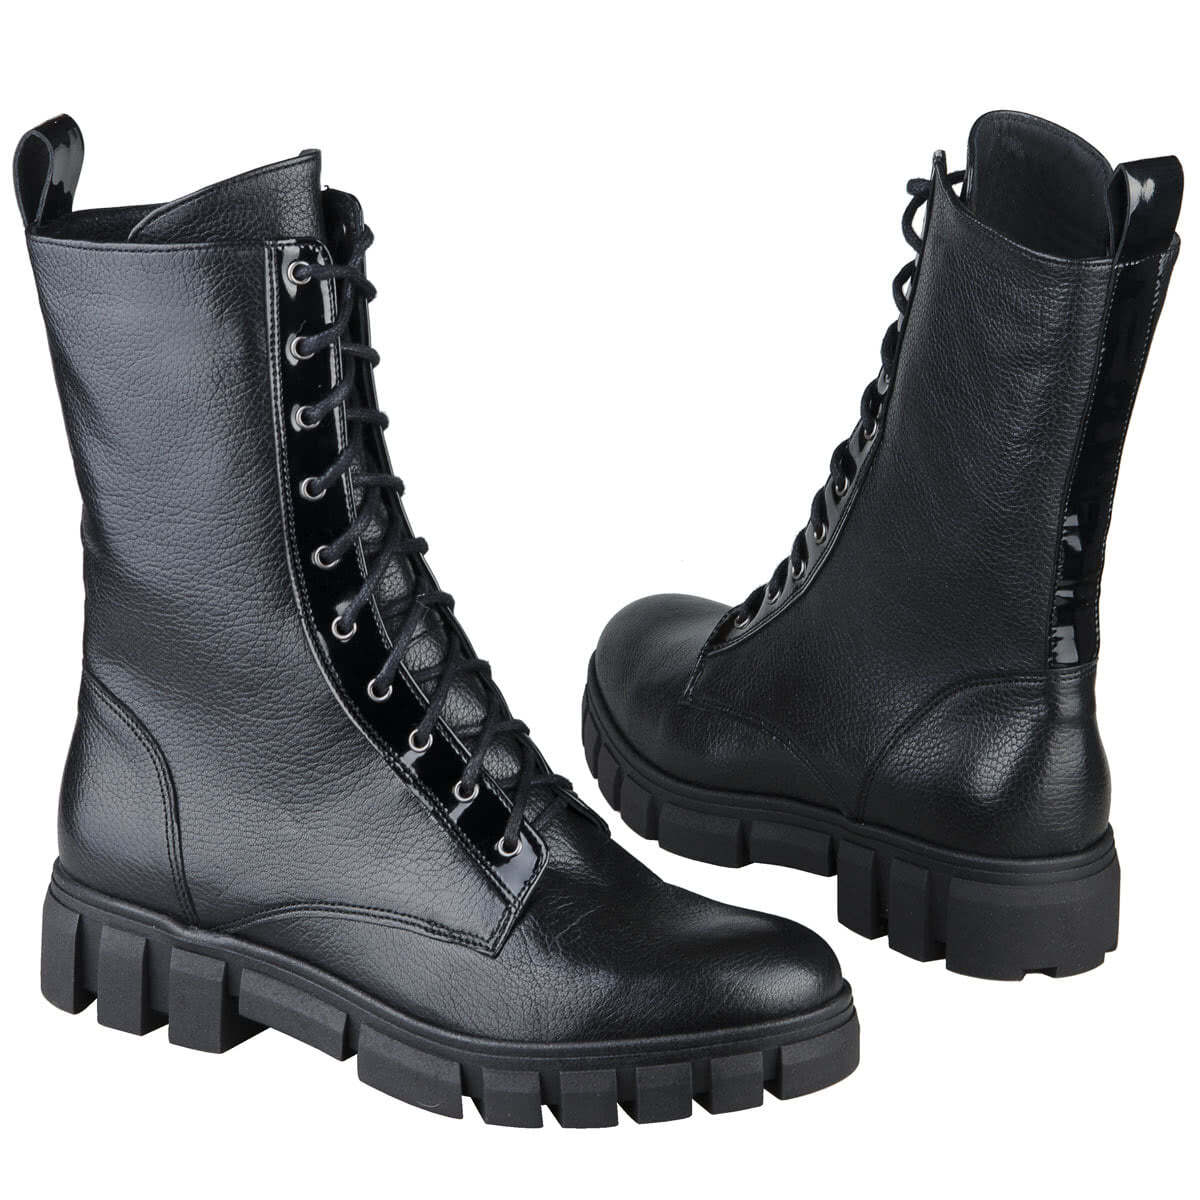 Черные женские высоки ботинки на шнуровке утепленные байкой на каблуке 4 смкупить в интернет магазине Kwinto